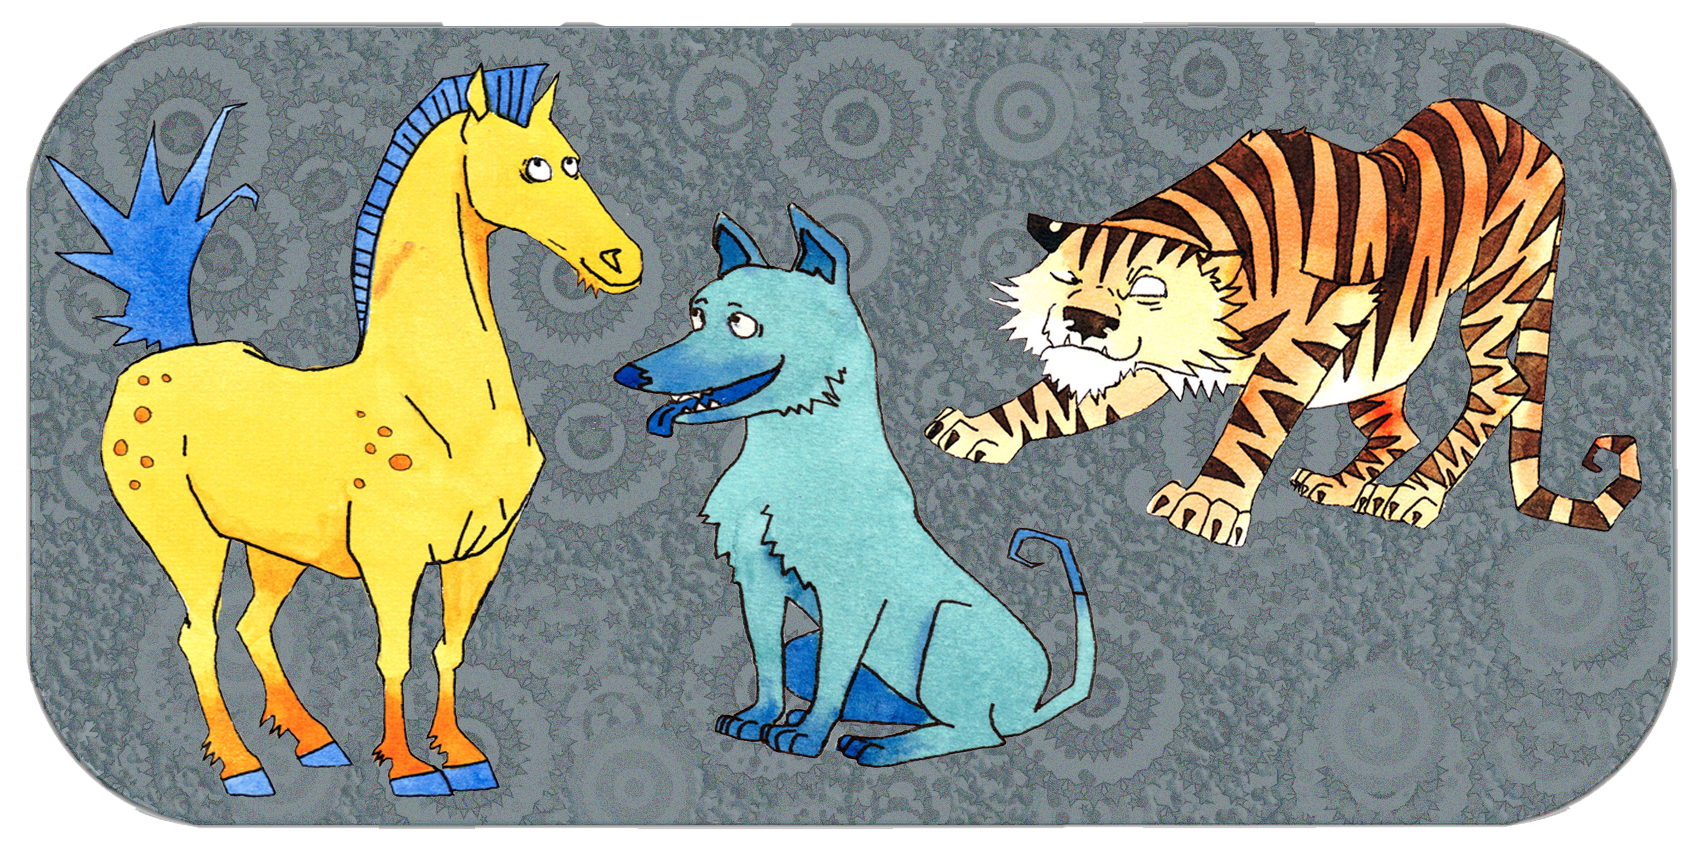 De fire kompatible grupper | San He | Hest, Hund, Tiger